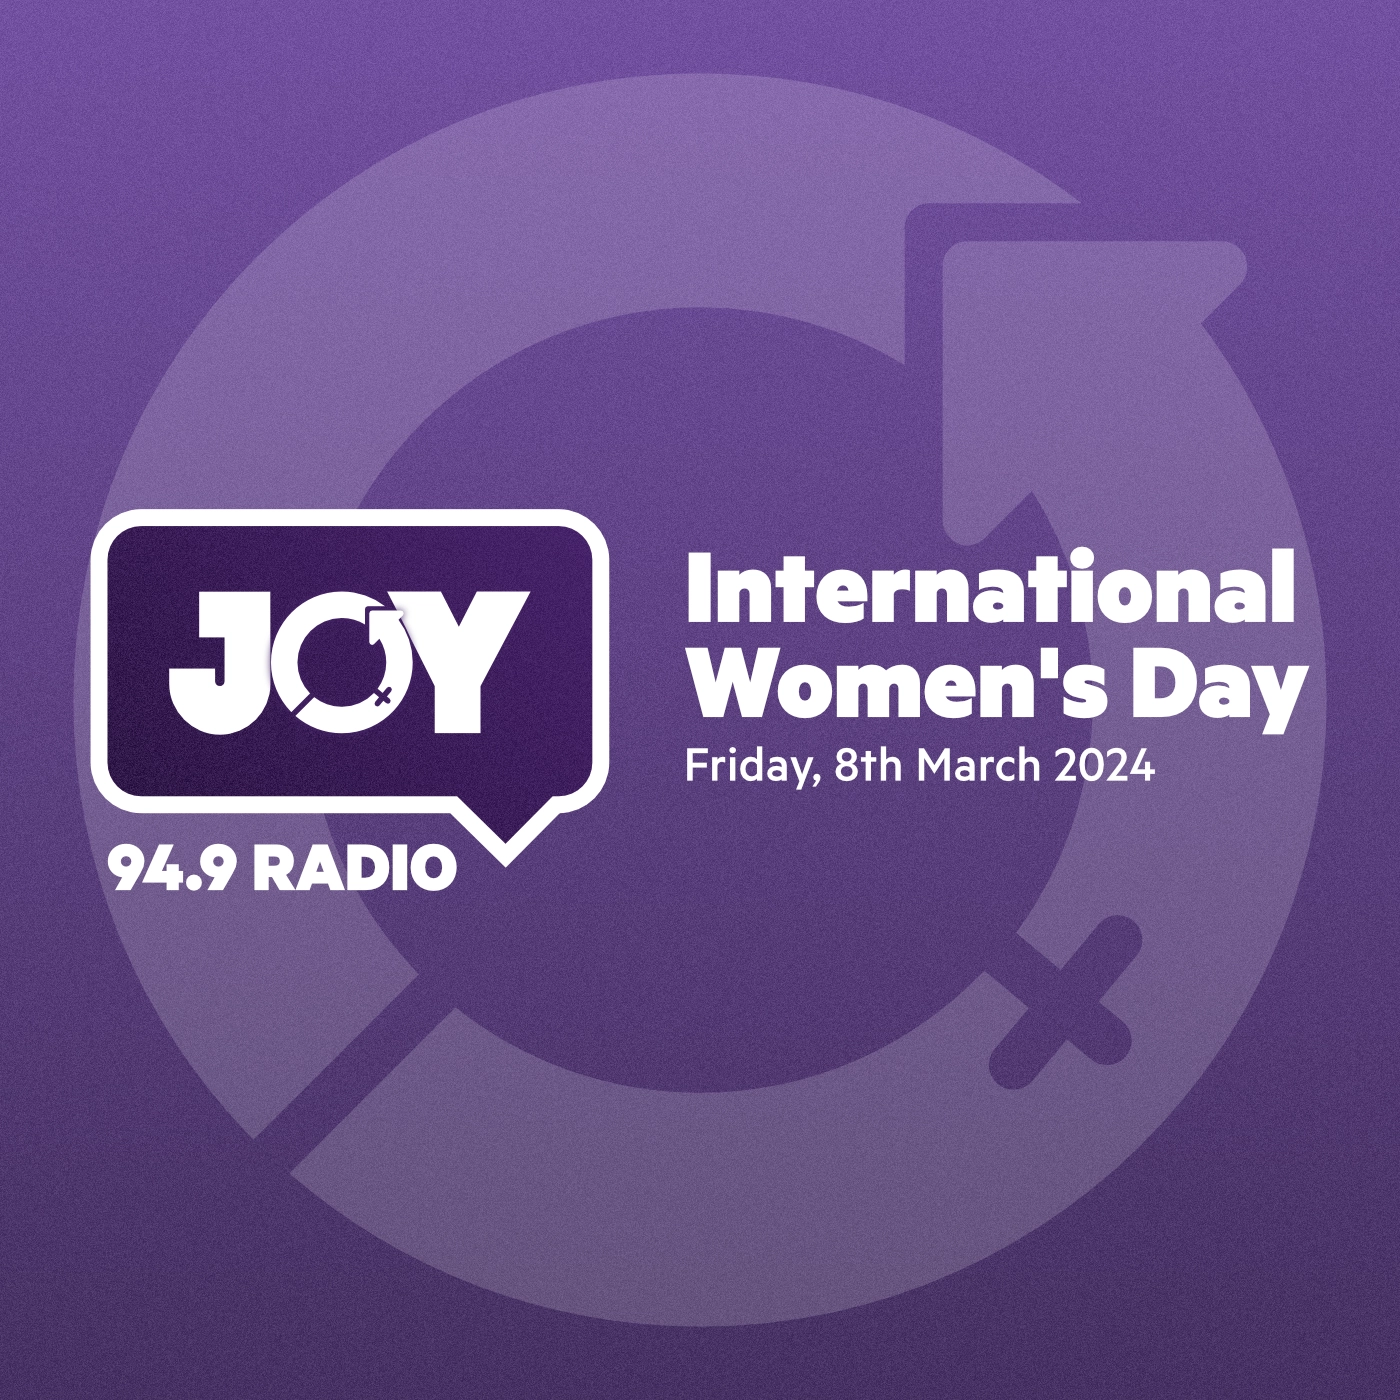 Celebrate International Women’s Day with JOY 94.9